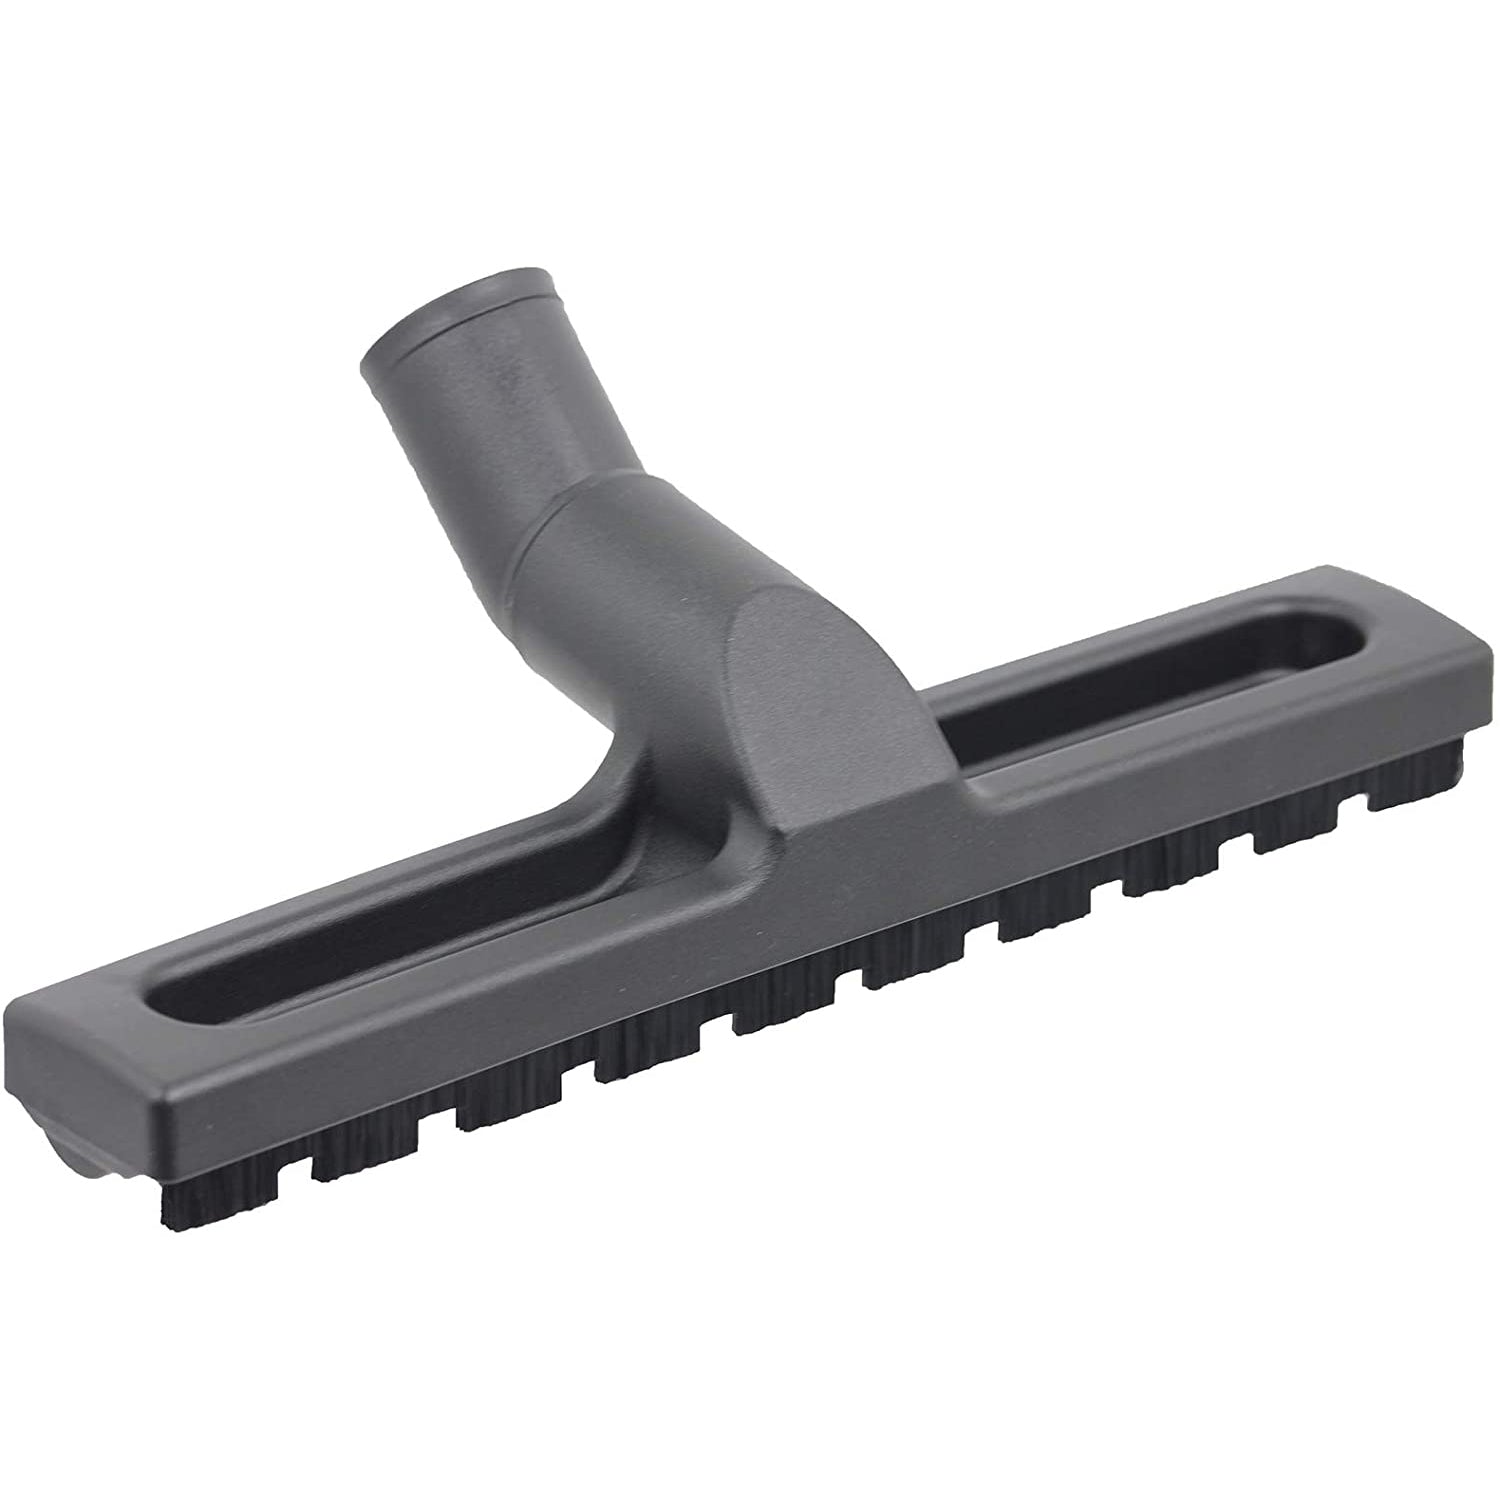 Deluxe Wheeled & Slim Hard Brush Tool for NILFISK Vacuum Cleaner 32mm